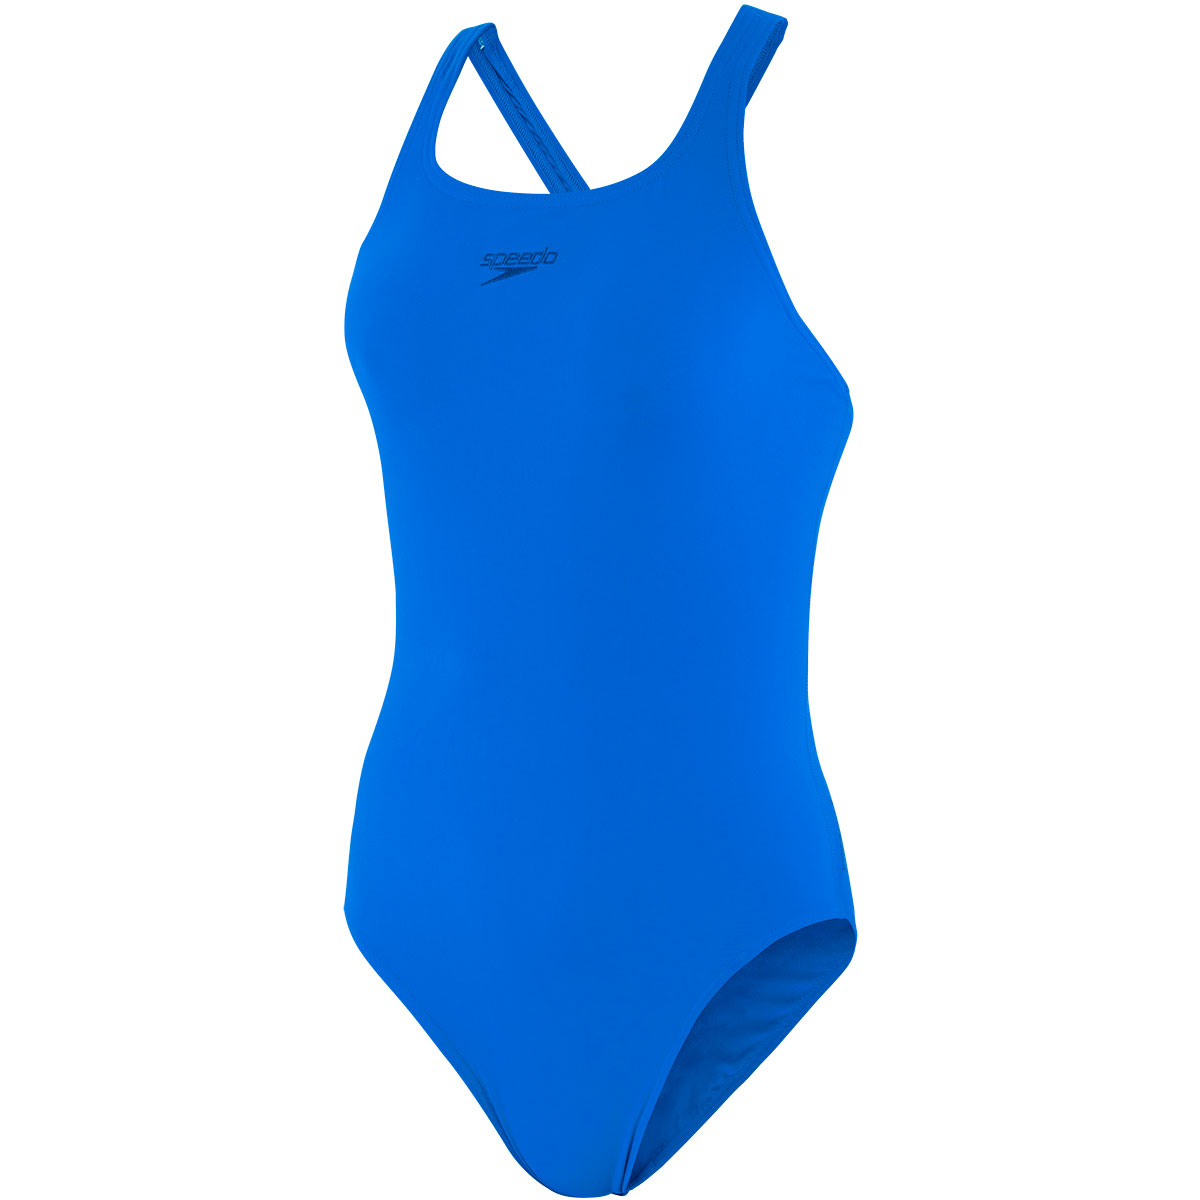 Bild von Speedo Essential Endurance+ Medalist Damen Badeanzug - bondi blue